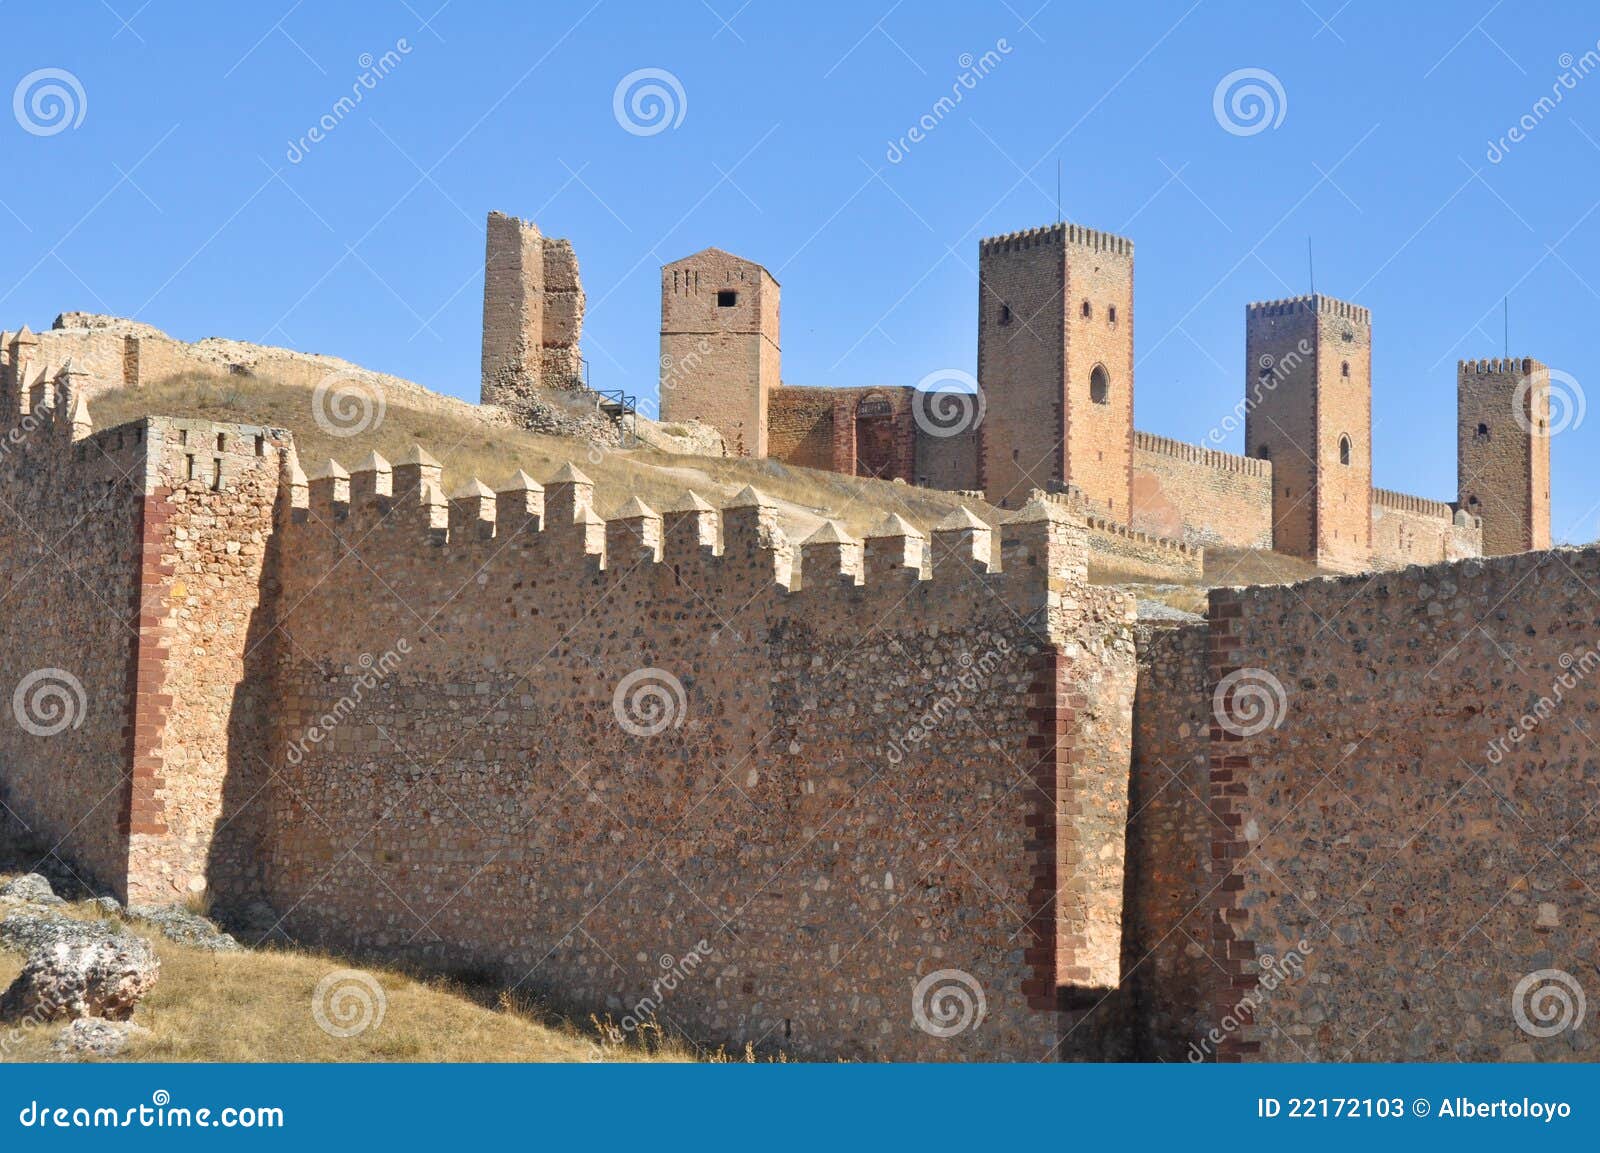 castle of molina de aragon. guadalajara